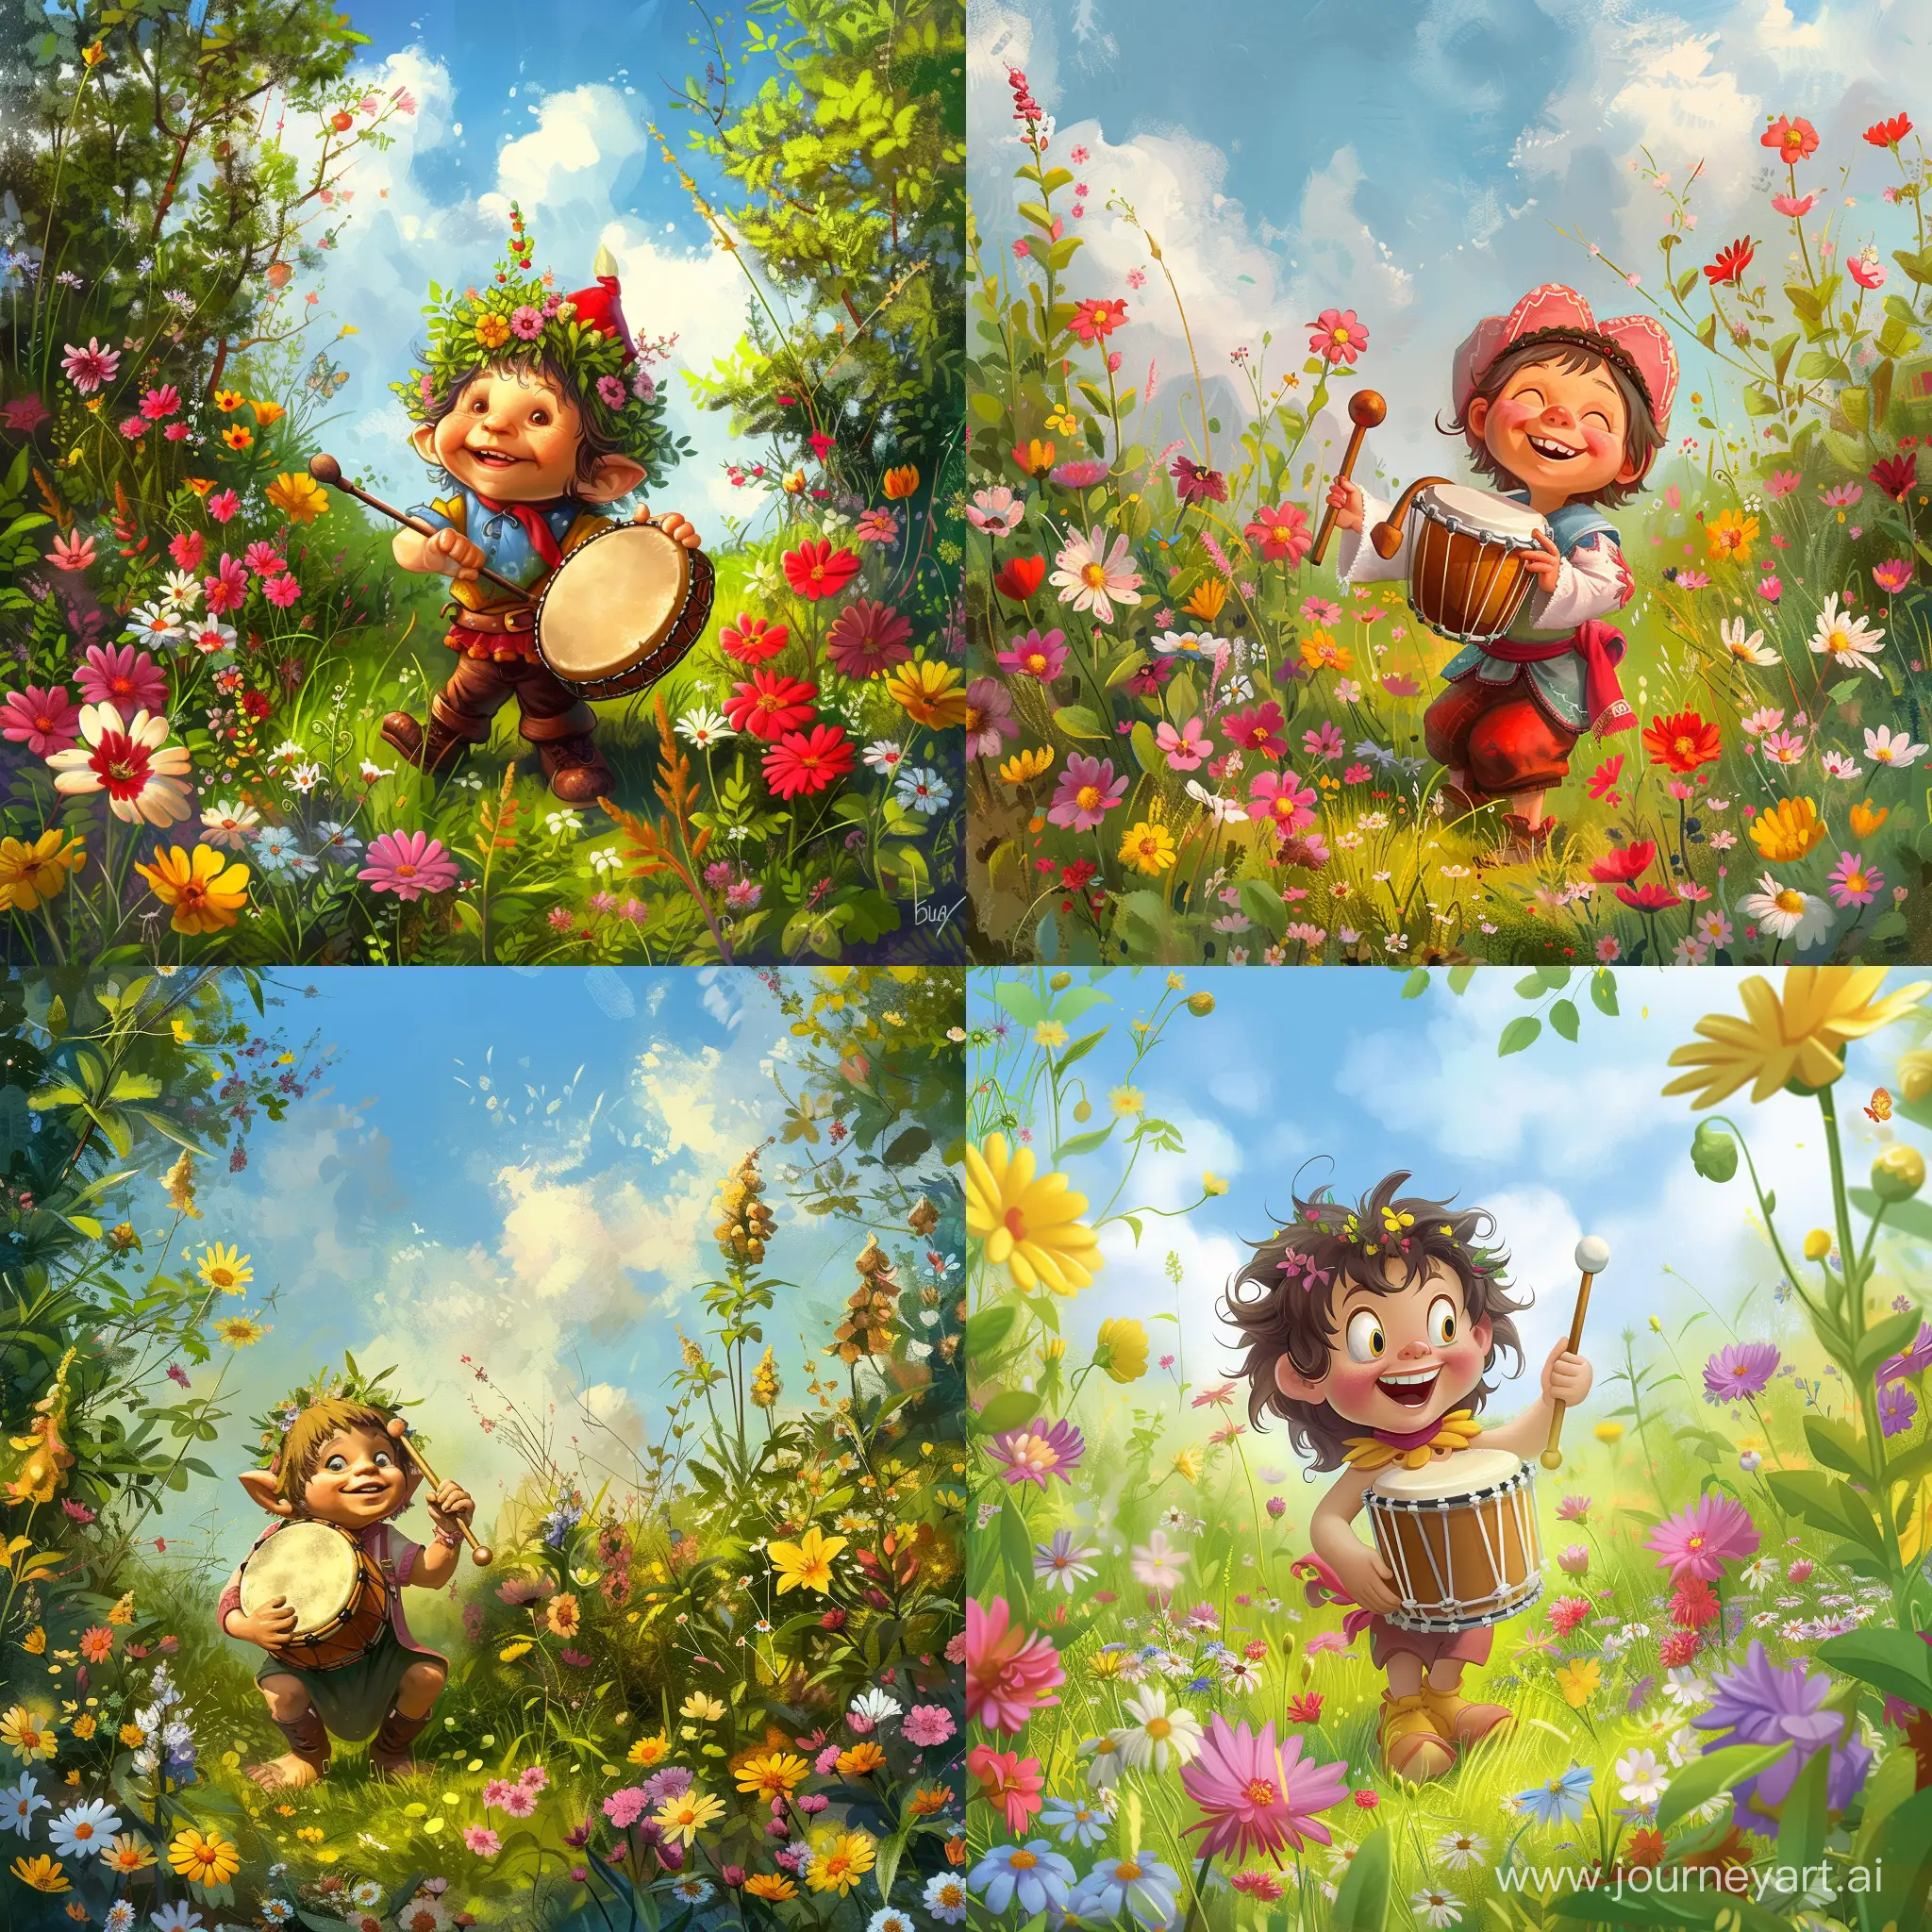 на цветущей поляне среди цветов сказочный персонаж Буба  с барабаном в руках  мультяшный